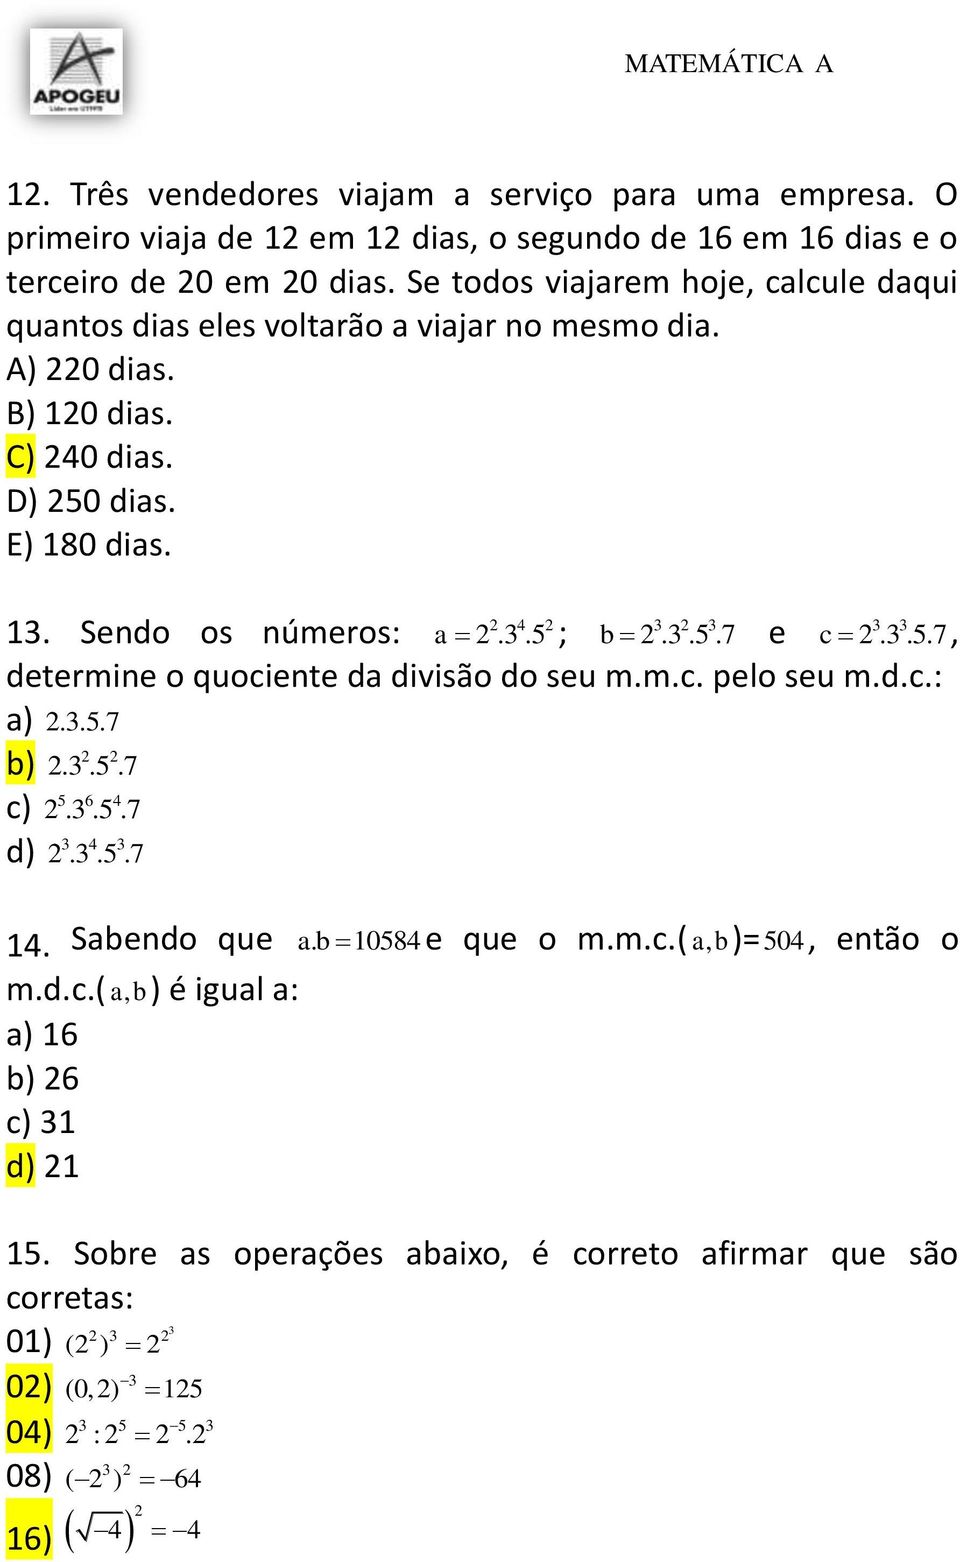 3.5.7 e c 2.3.5.7, determine o quociente da divisão do seu m.m.c. pelo seu m.d.c.: a) 2.3.5.7 b) 2 2 2.3.5.7 c) 5 6 4 2.3.5.7 d) 3 4 3 2.3.5.7 14. Sabendo que ab. 10584 e que o m.m.c.( ab)=, 504, então o m.